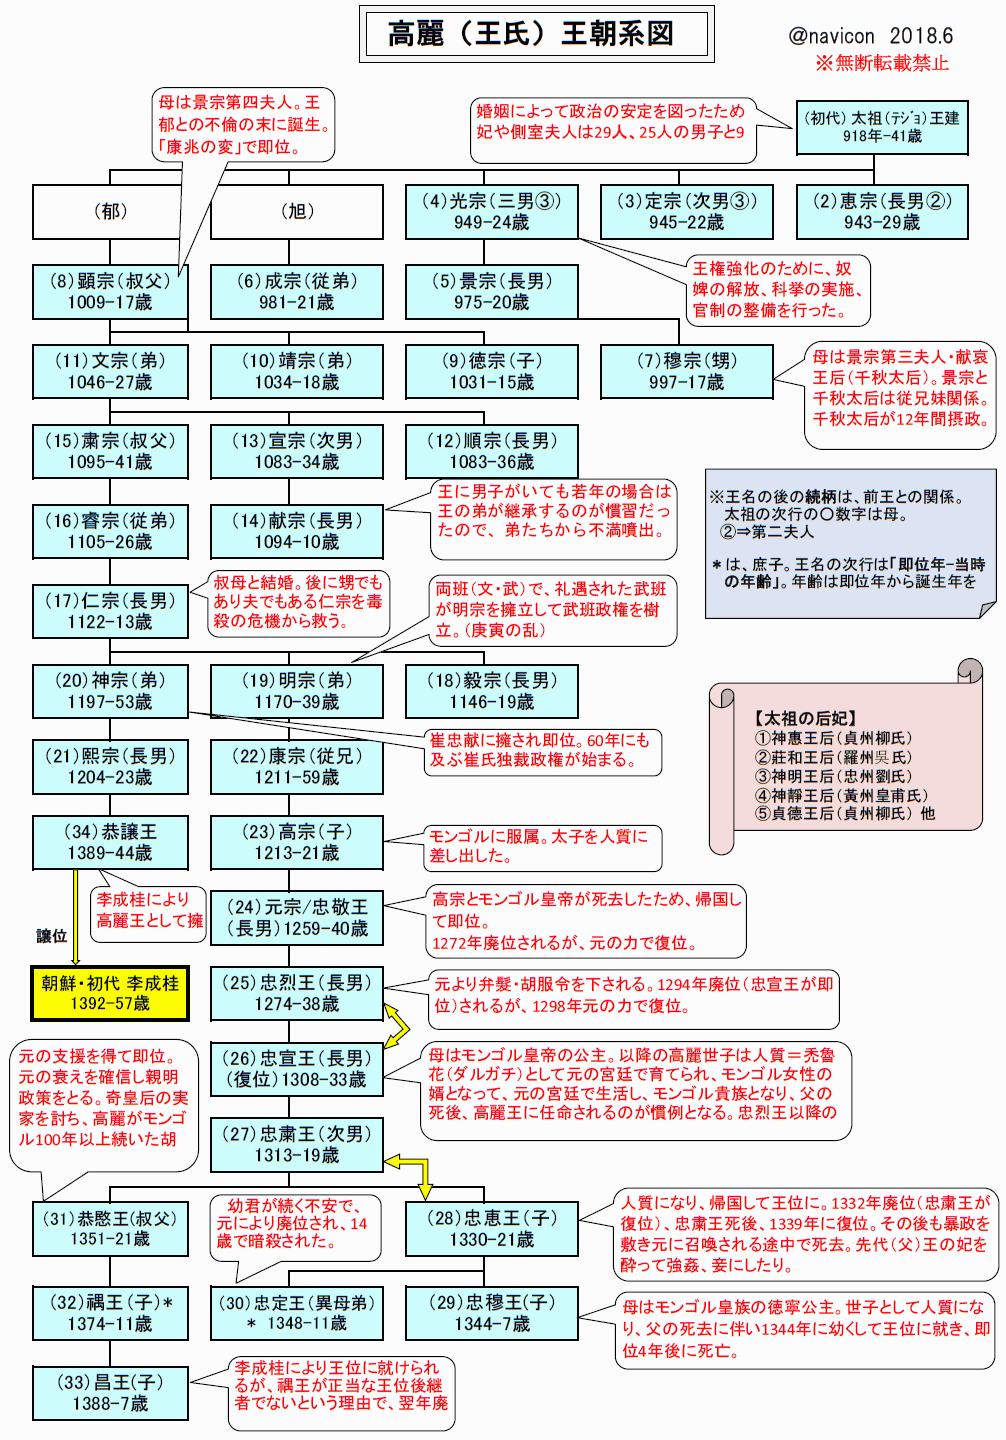 高麗王朝系図